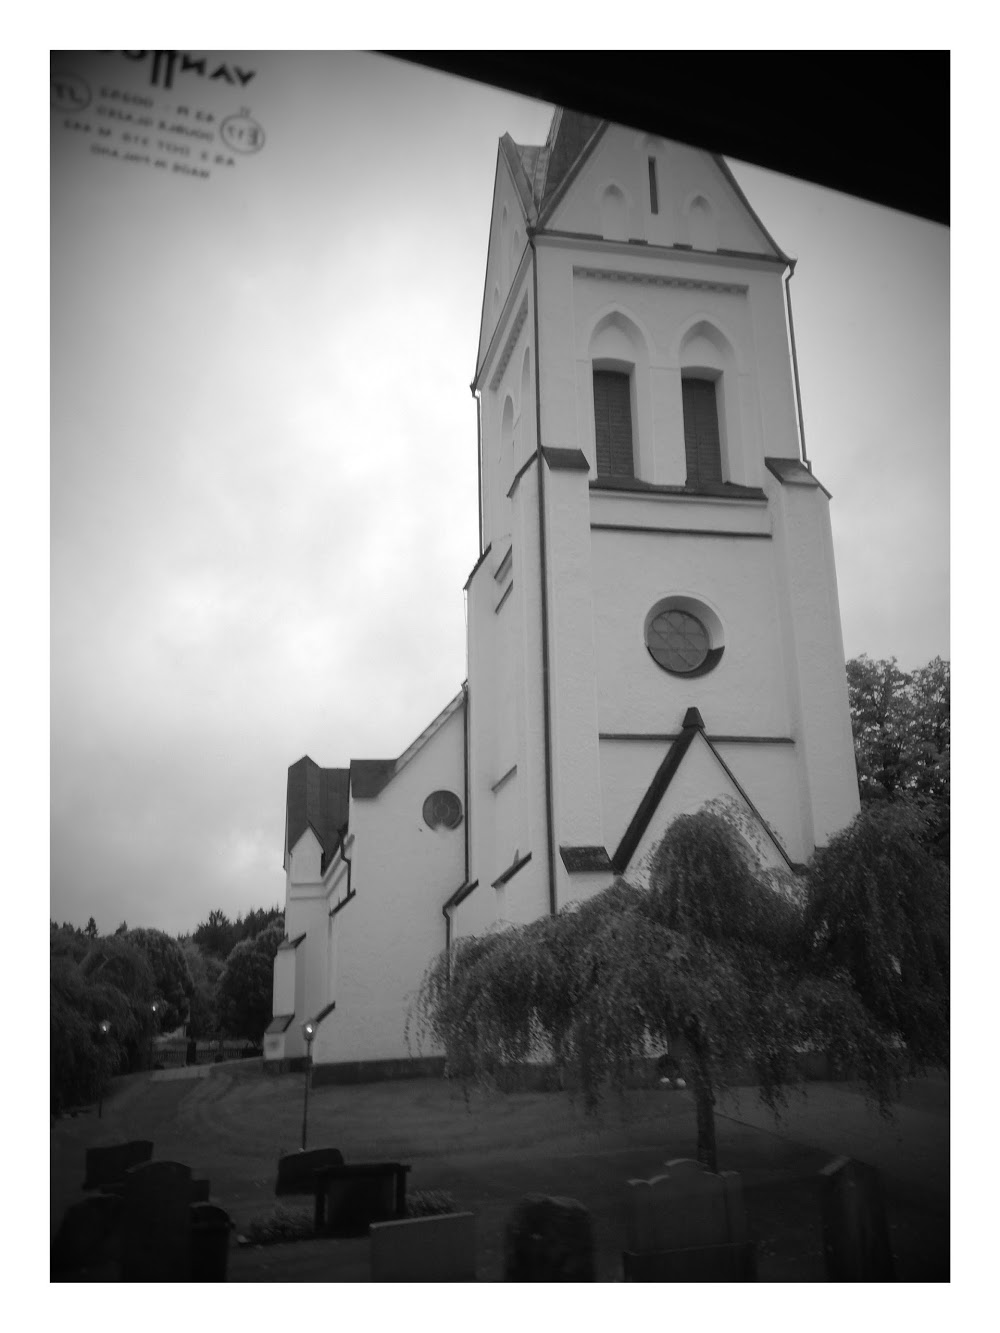 Okome kyrka